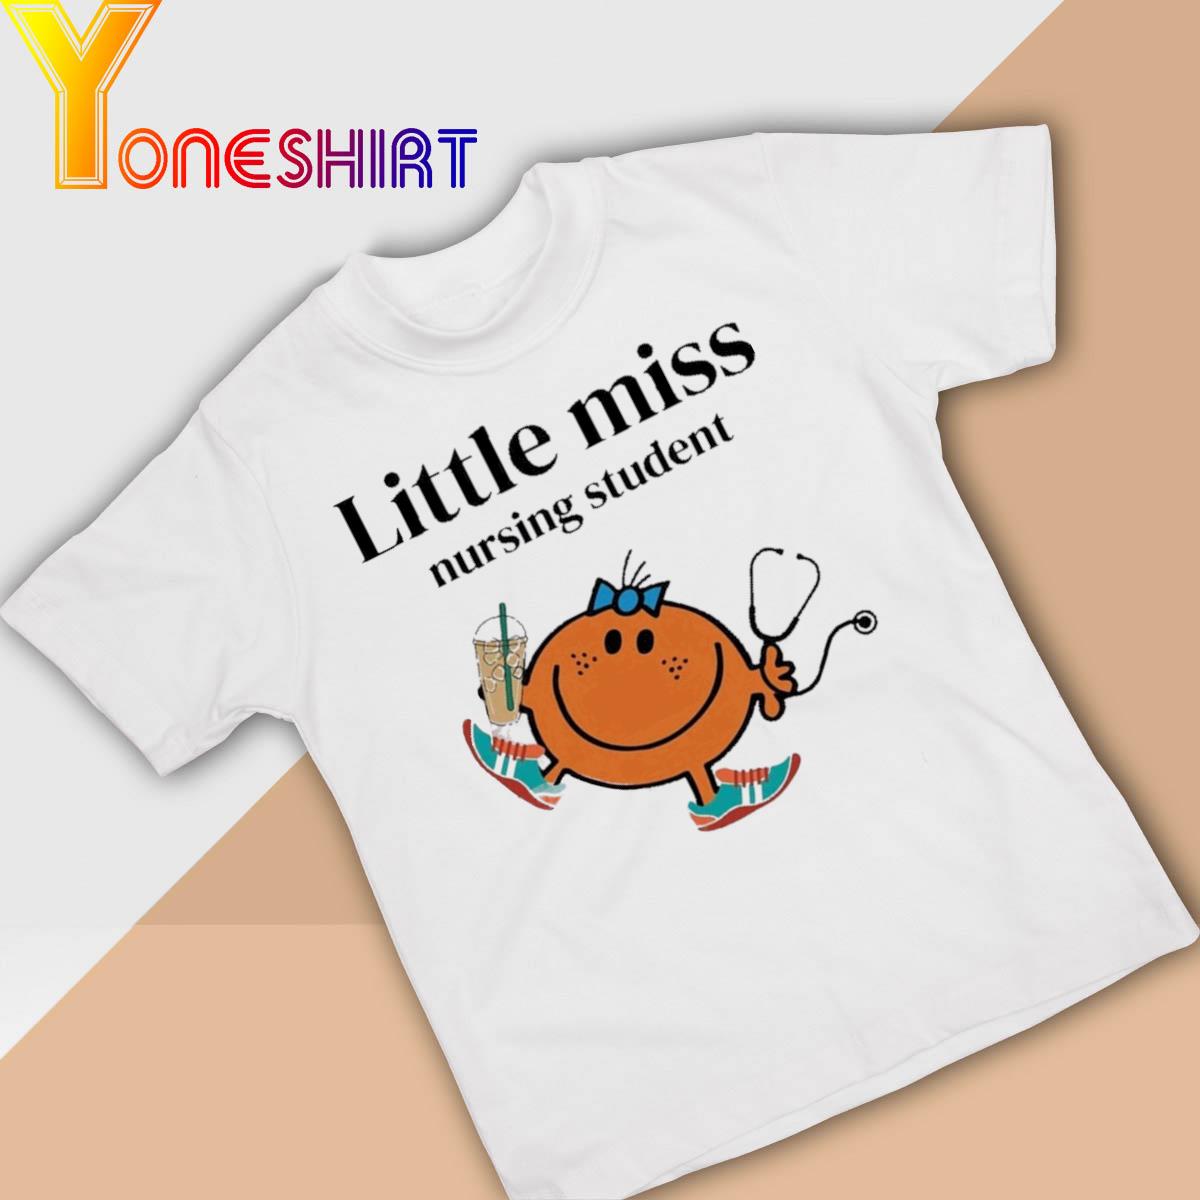 Little Miss Nursing Student shirt